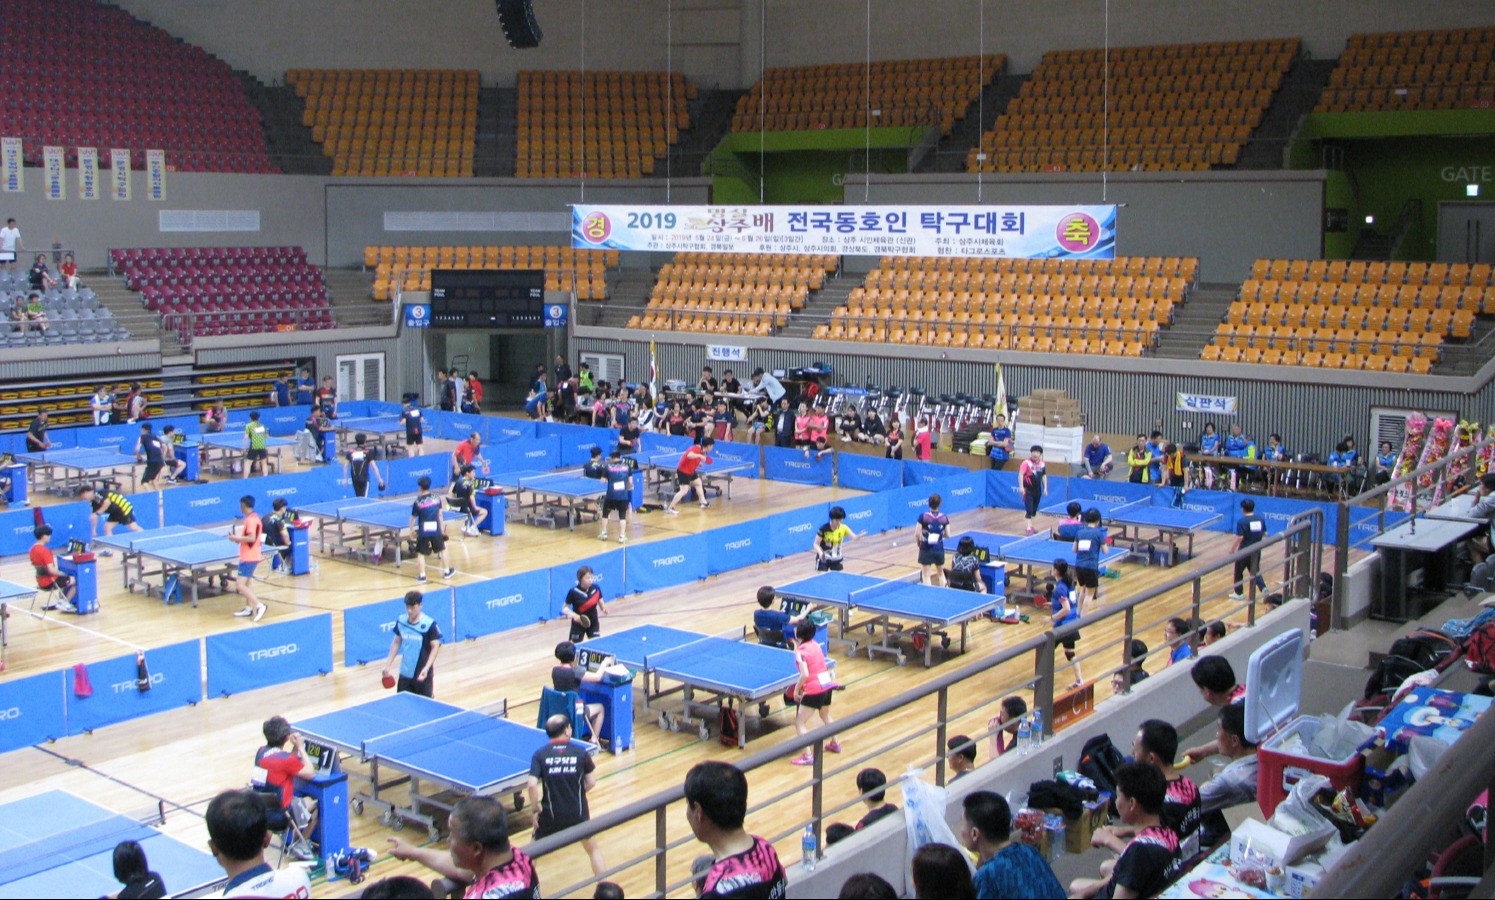 2019명실상주배 전국동호인탁구대회가 상주실내체육관에서 개막해 24일부터 26일까지 사흘간 열전에 들어갔다.